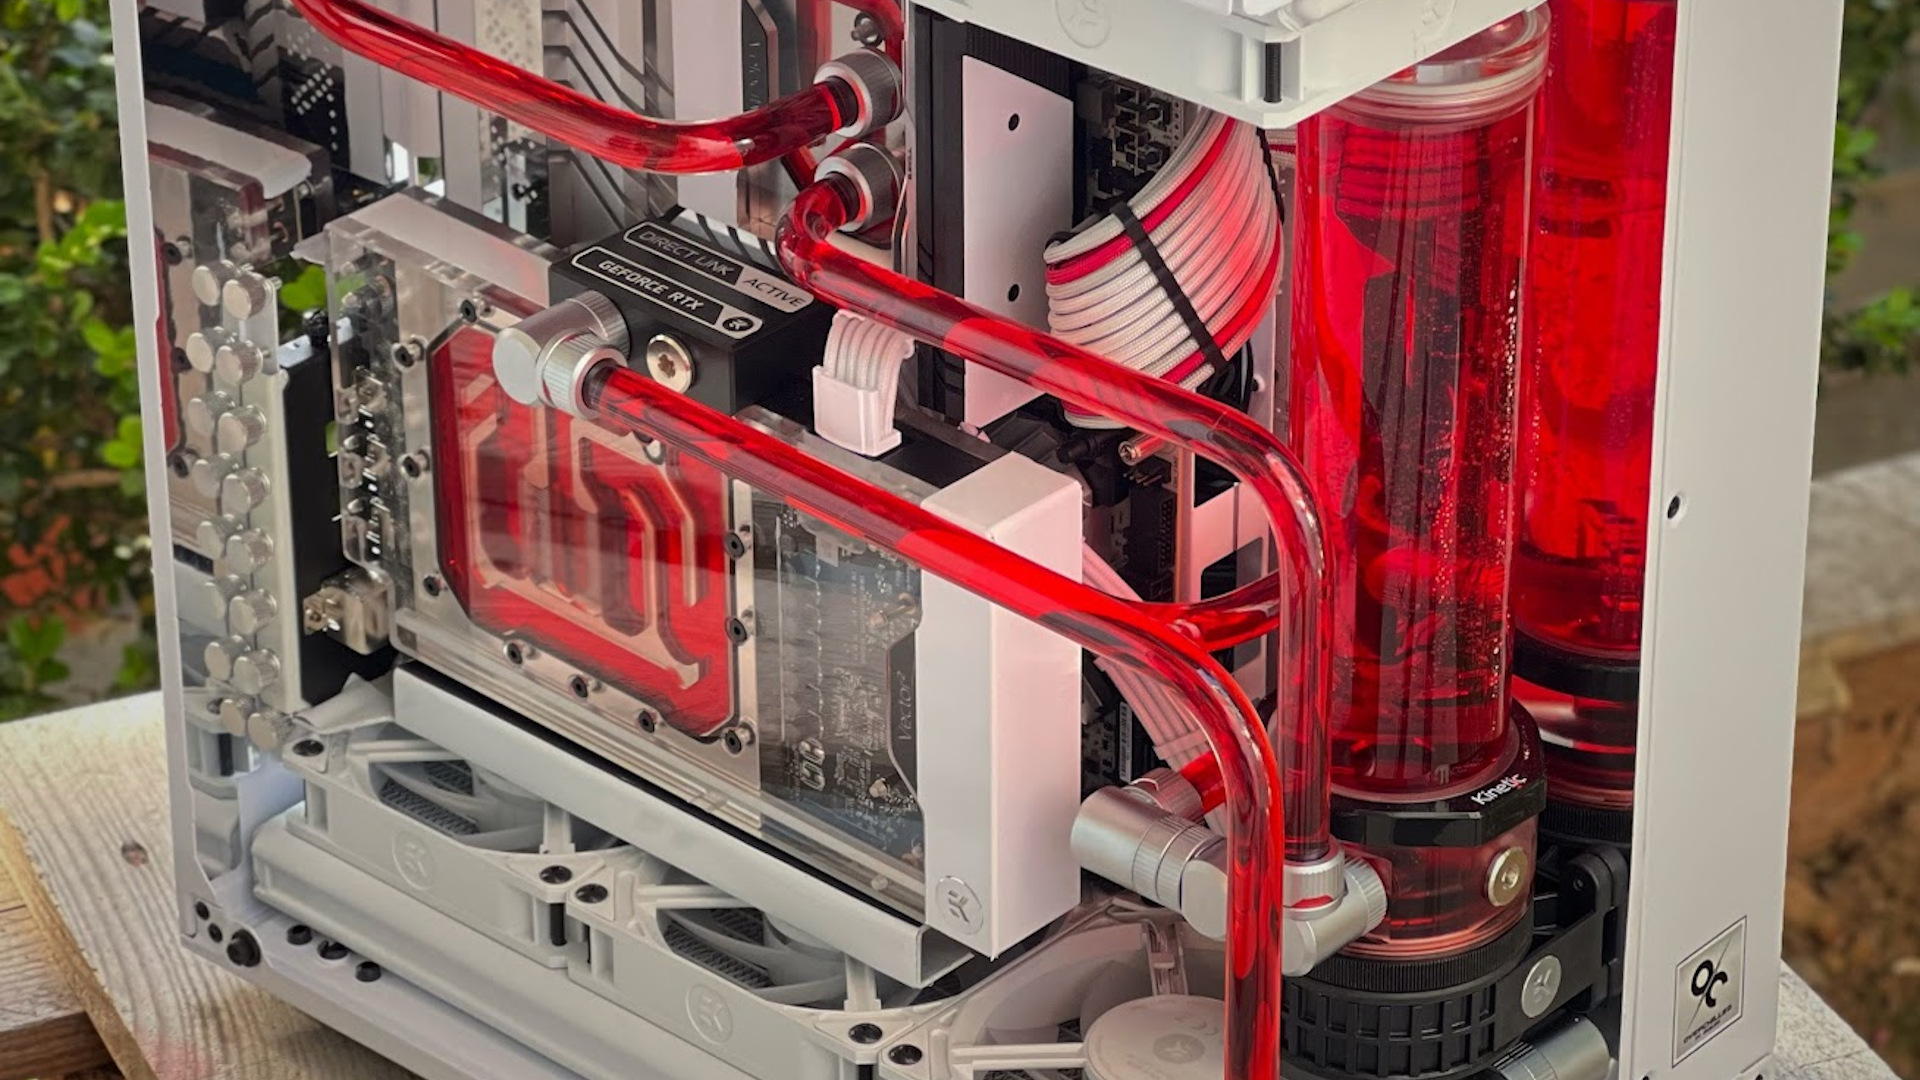 Ein genauerer Blick auf die roten Schläuche in diesem weiß-roten wassergekühlten PC